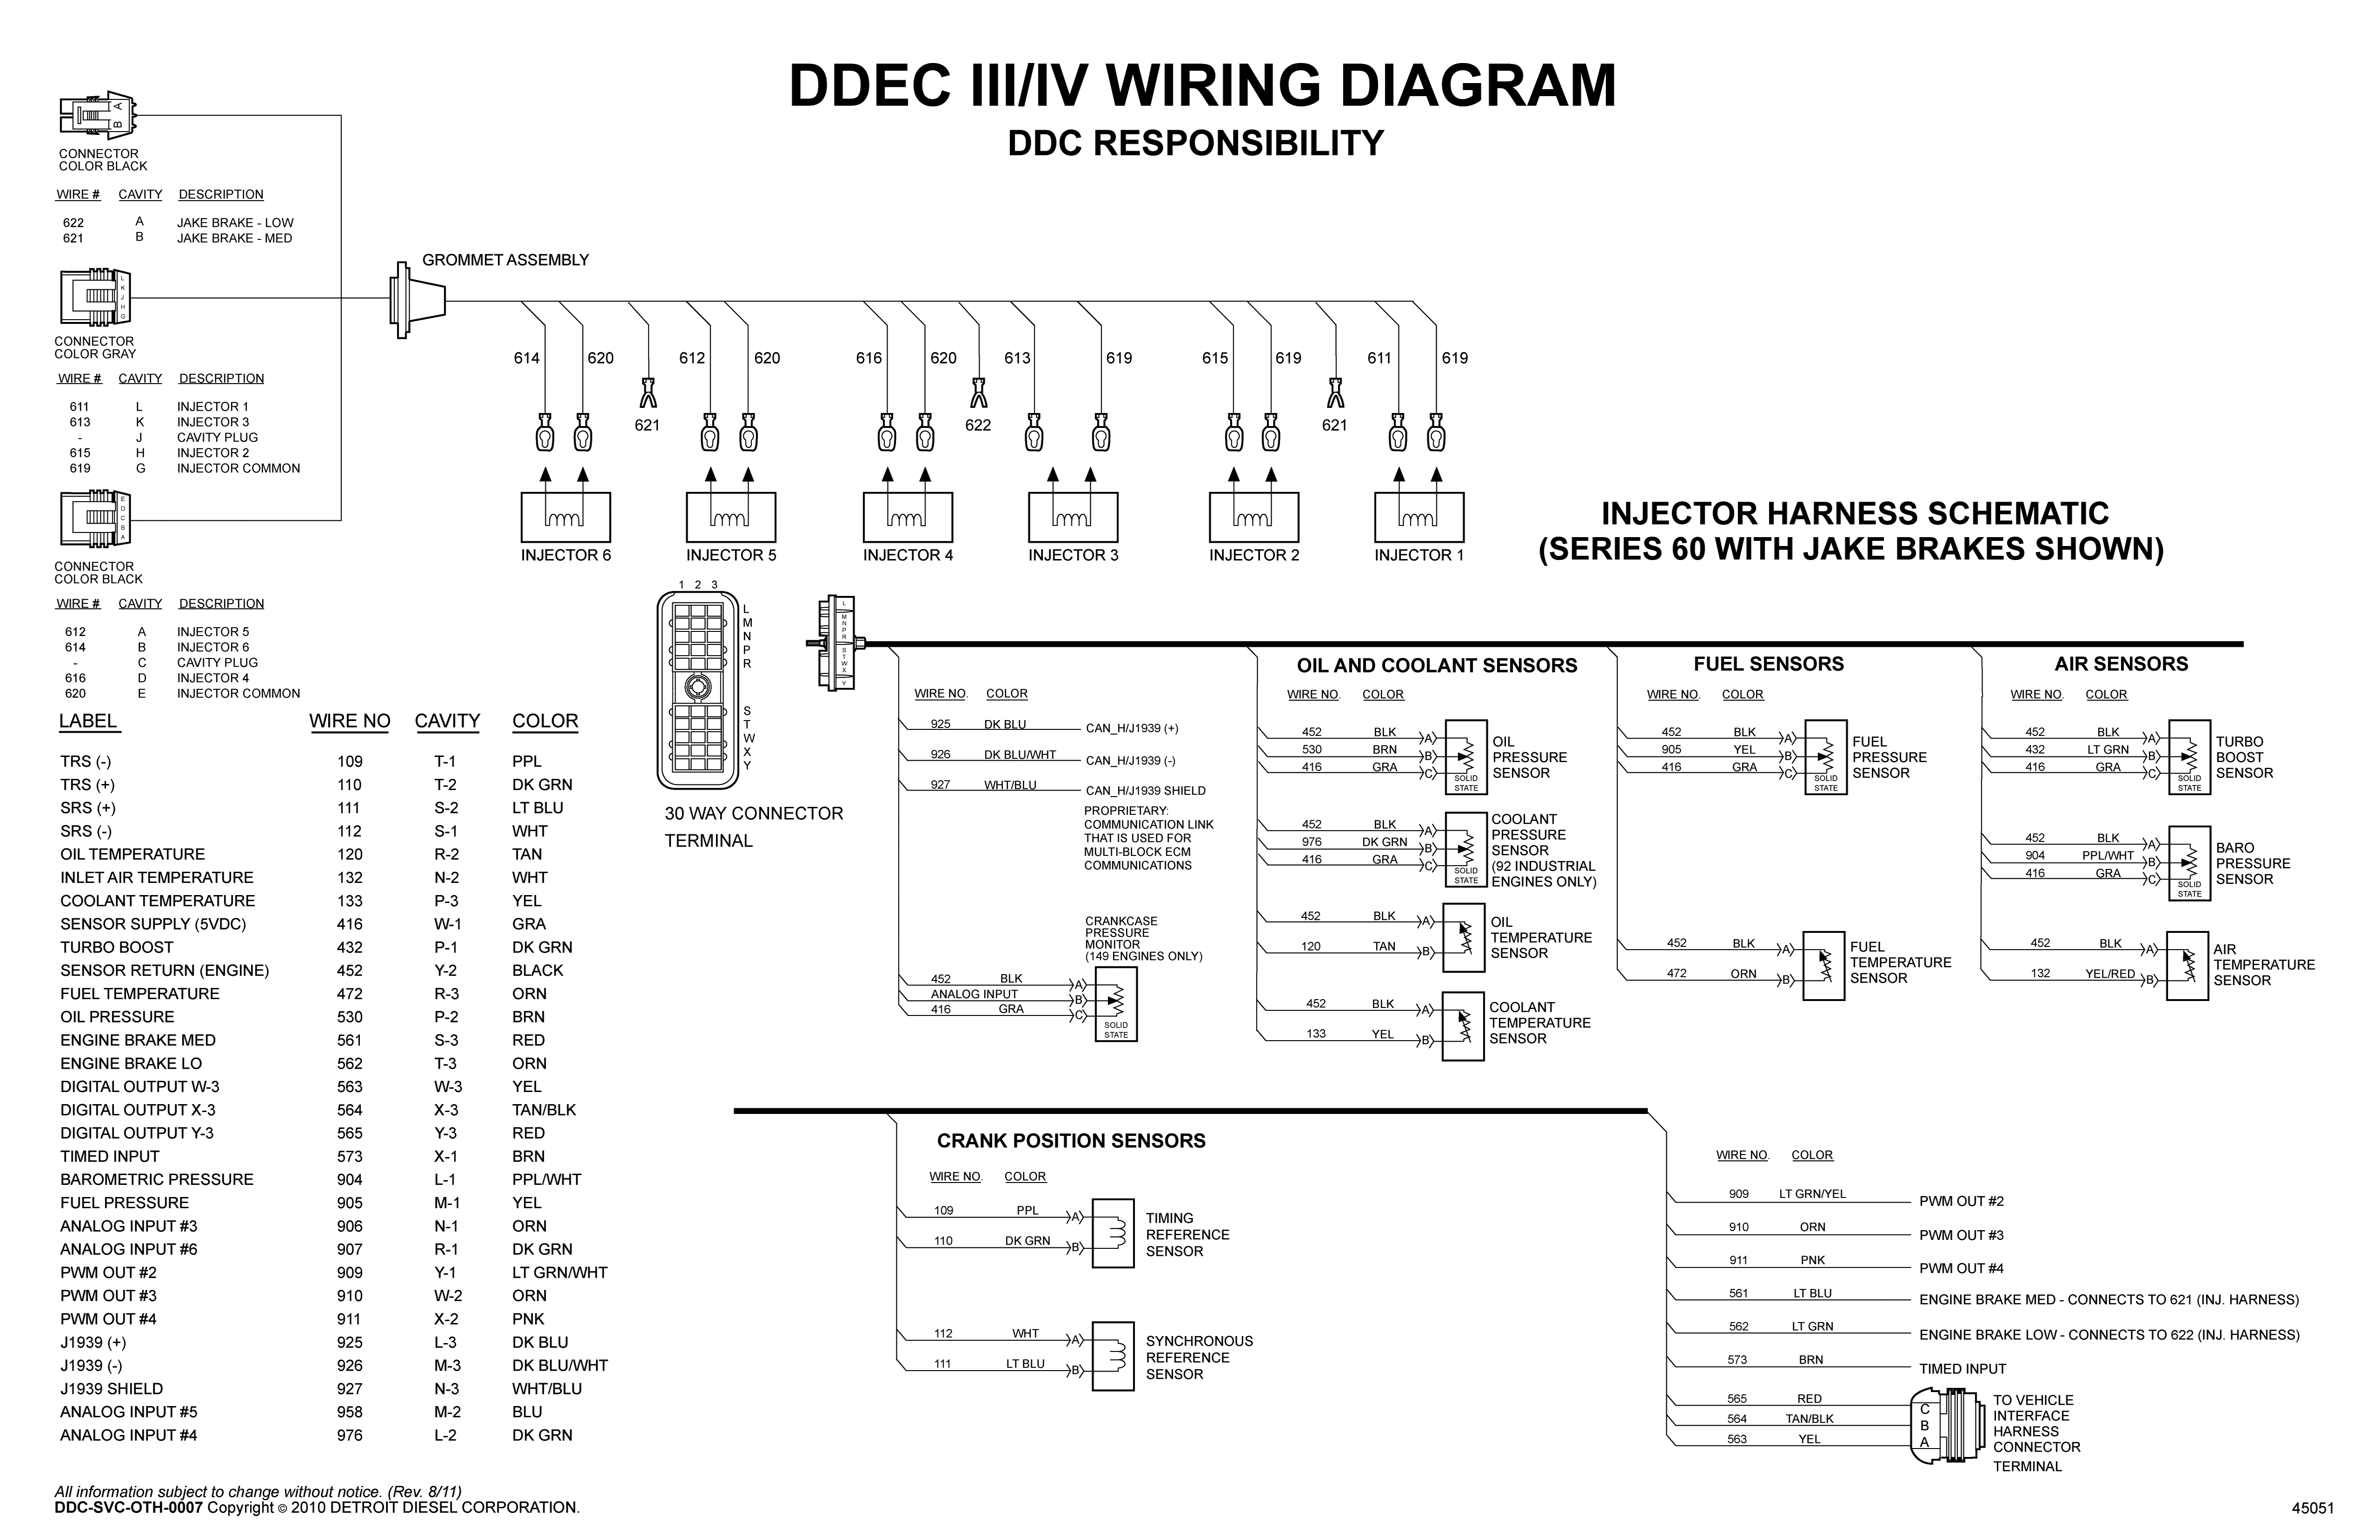 ddec 4 wiring diagram